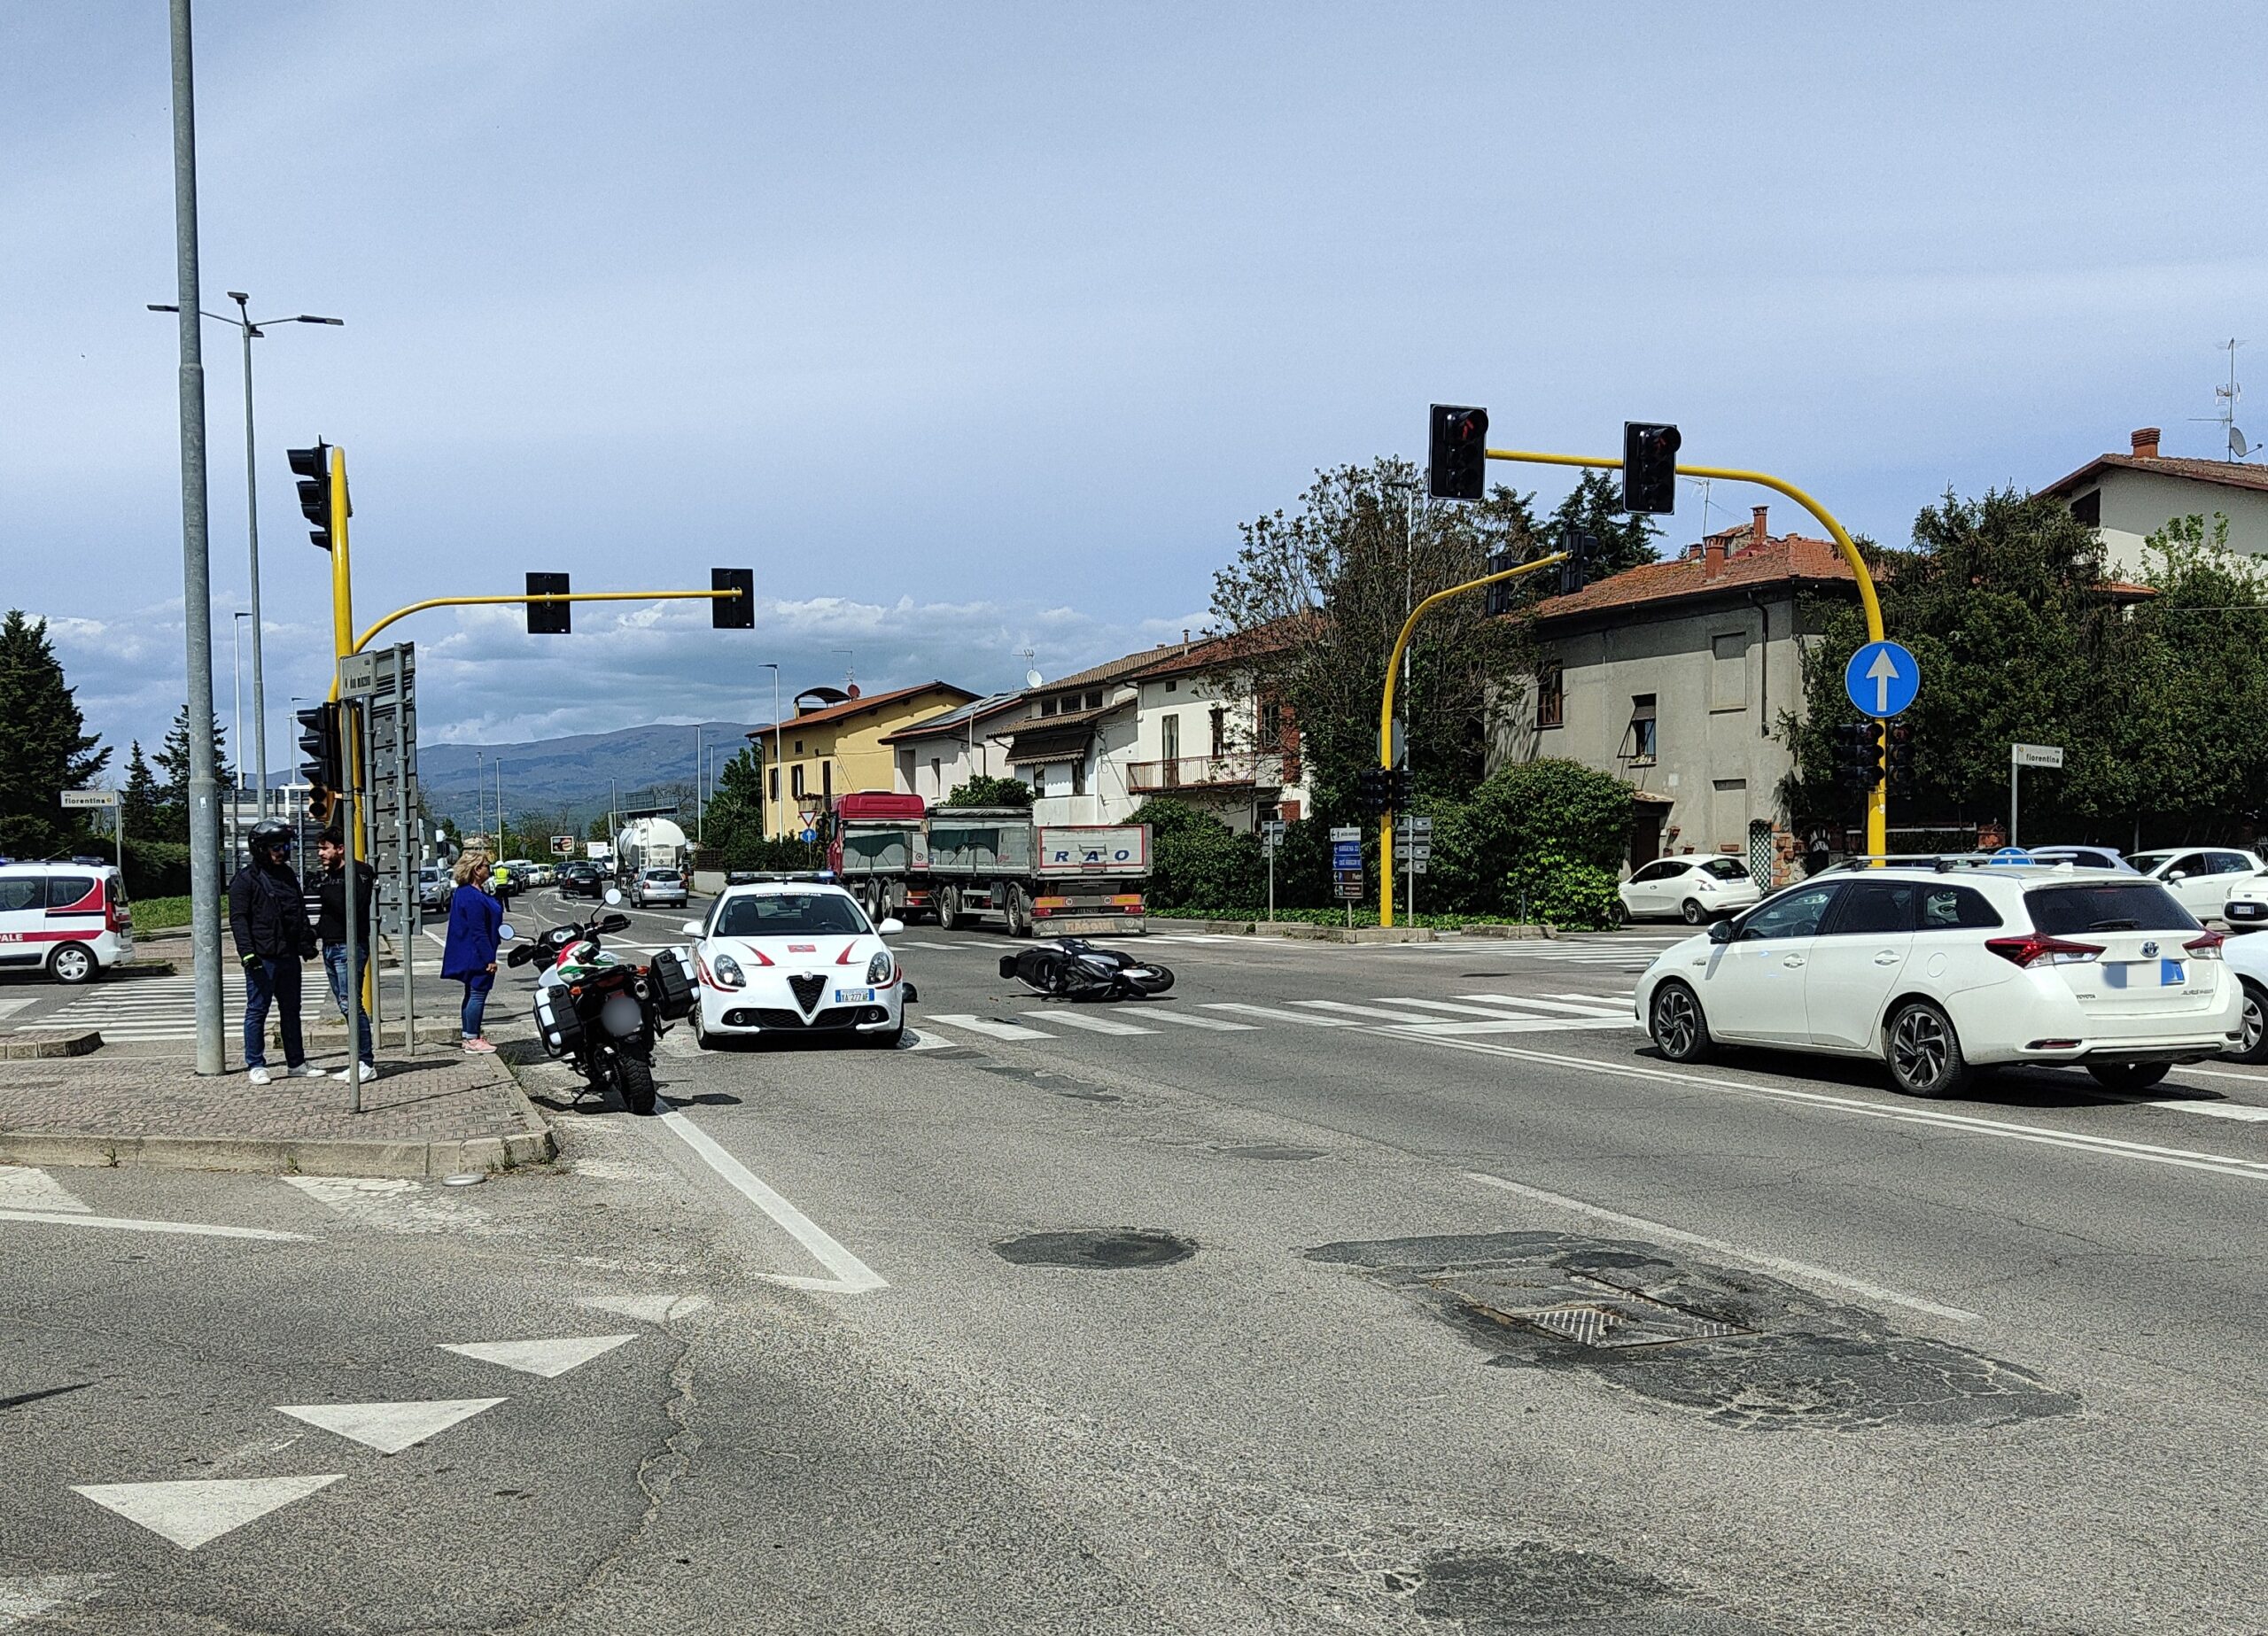 Vigili urbani in sirena urtano uno scooter al semaforo di via Fiorentina